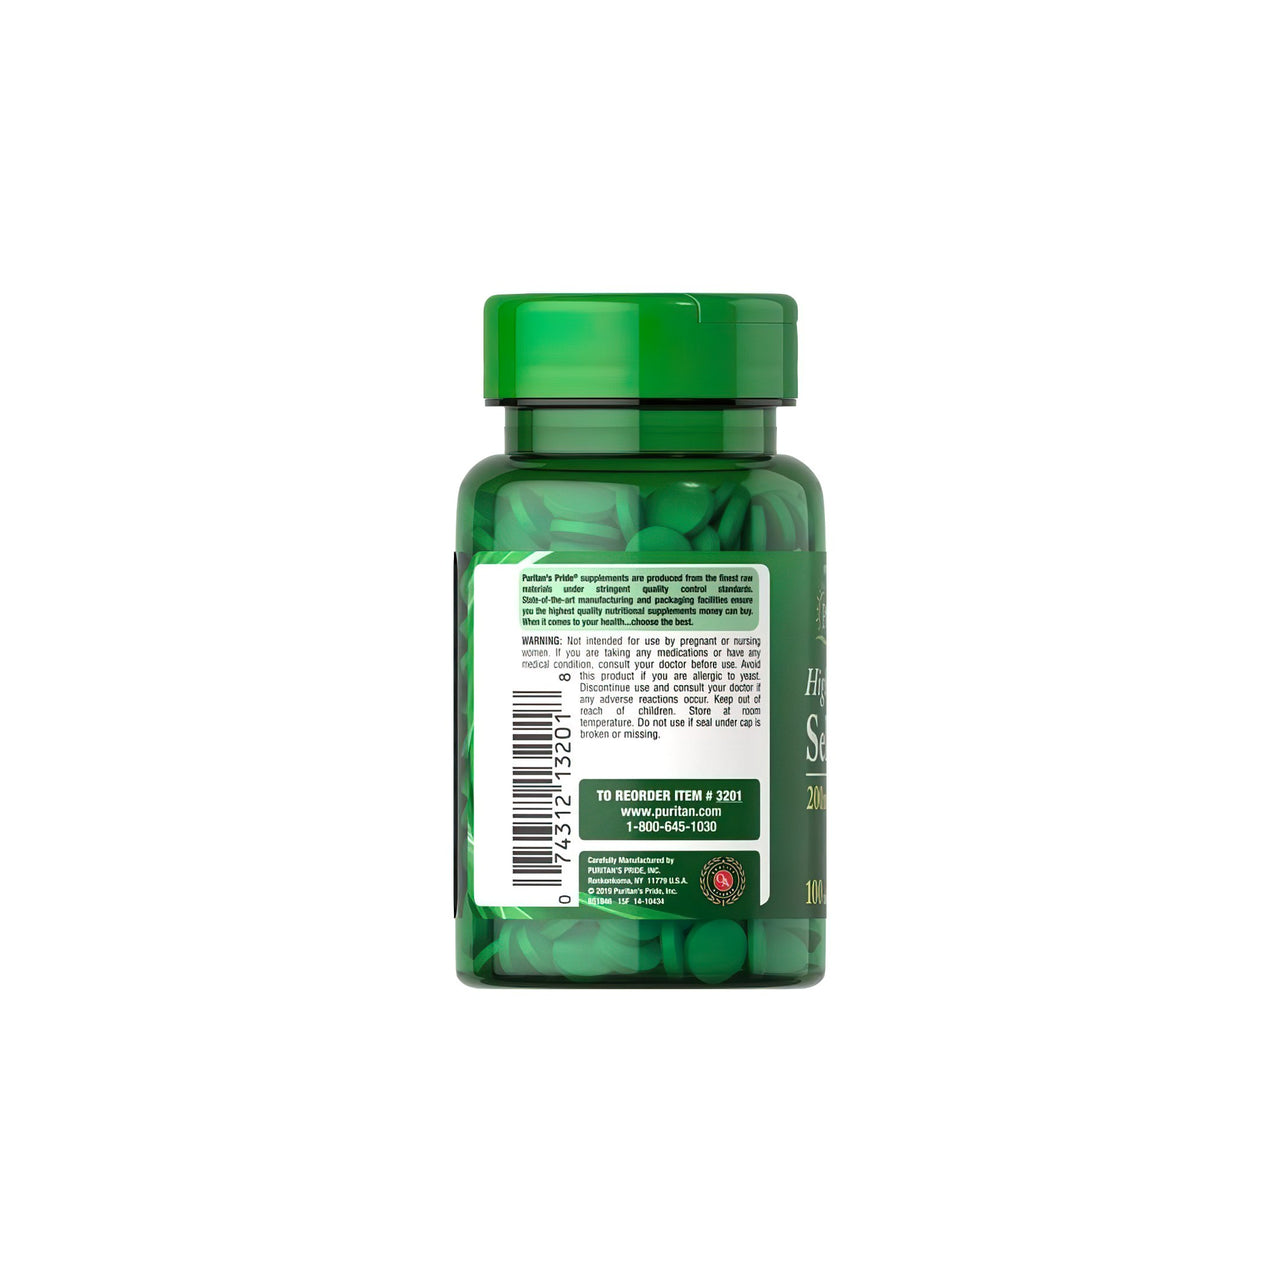 Un flacon de Puritan's Pride Selenium 200 mcg 100 comprimés, un complément alimentaire contenant du thé vert, un antioxydant, sur fond blanc.